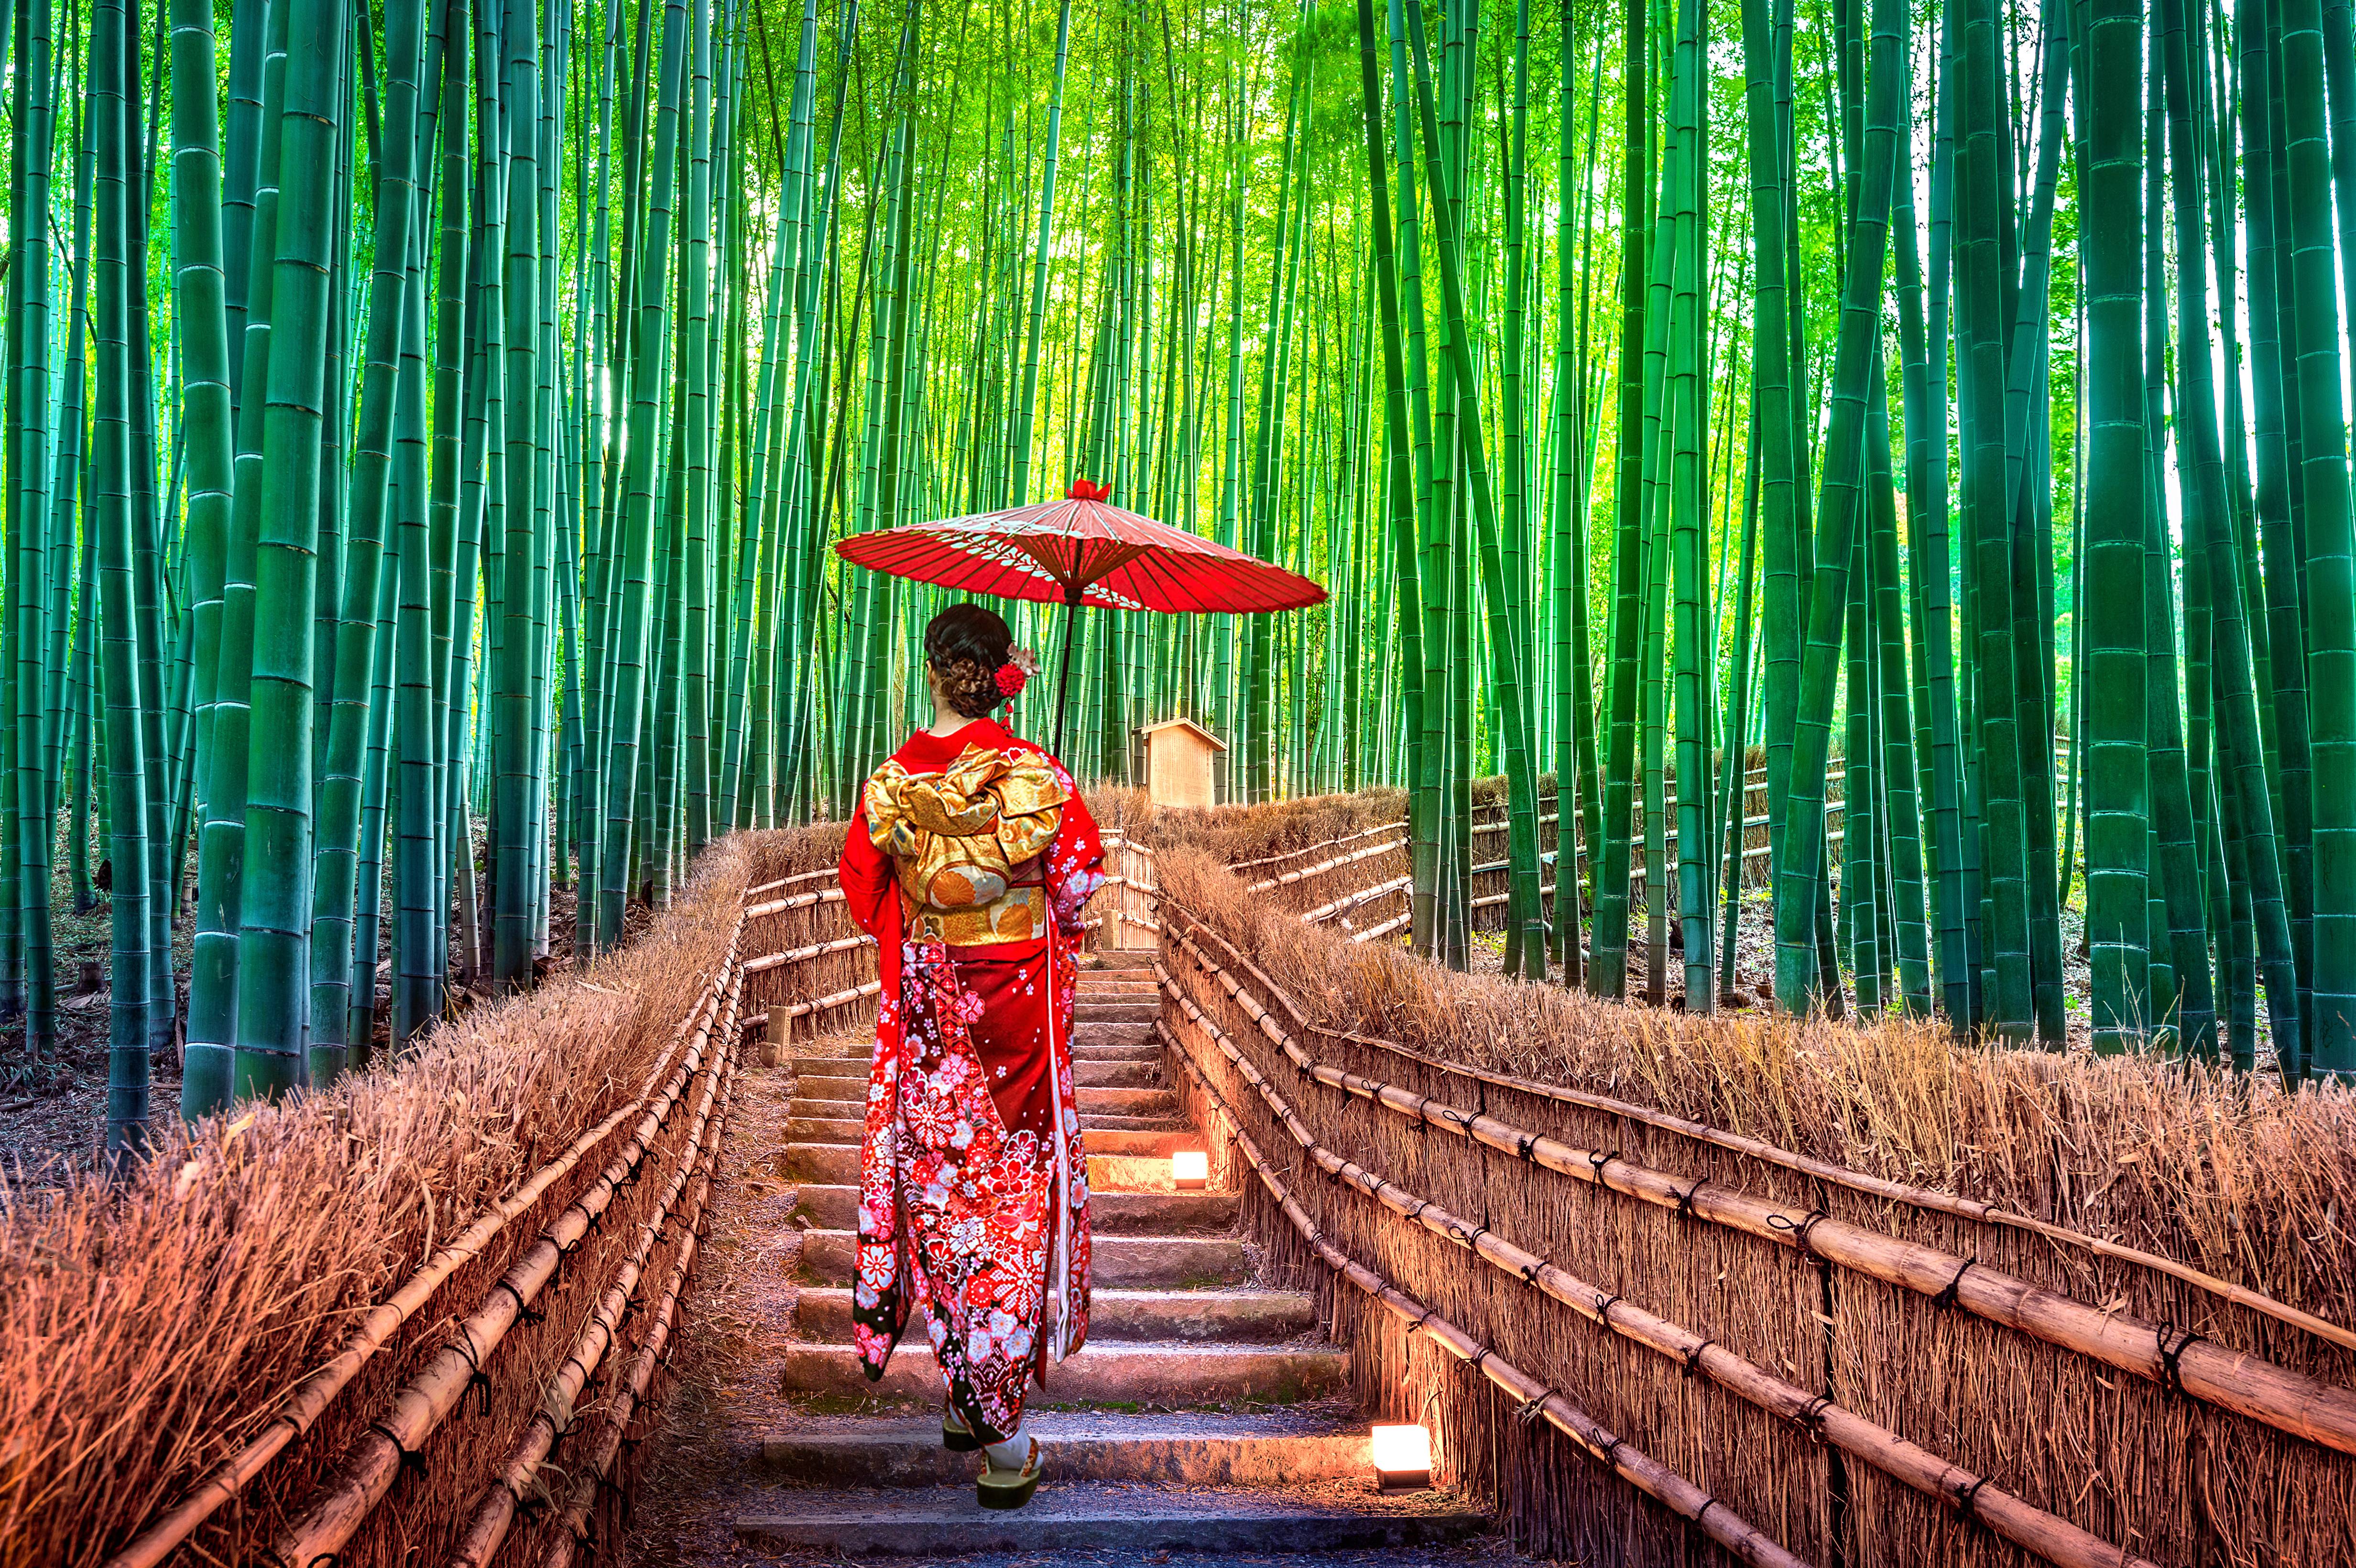 donna con ombrello rosso tra foresta di bambu